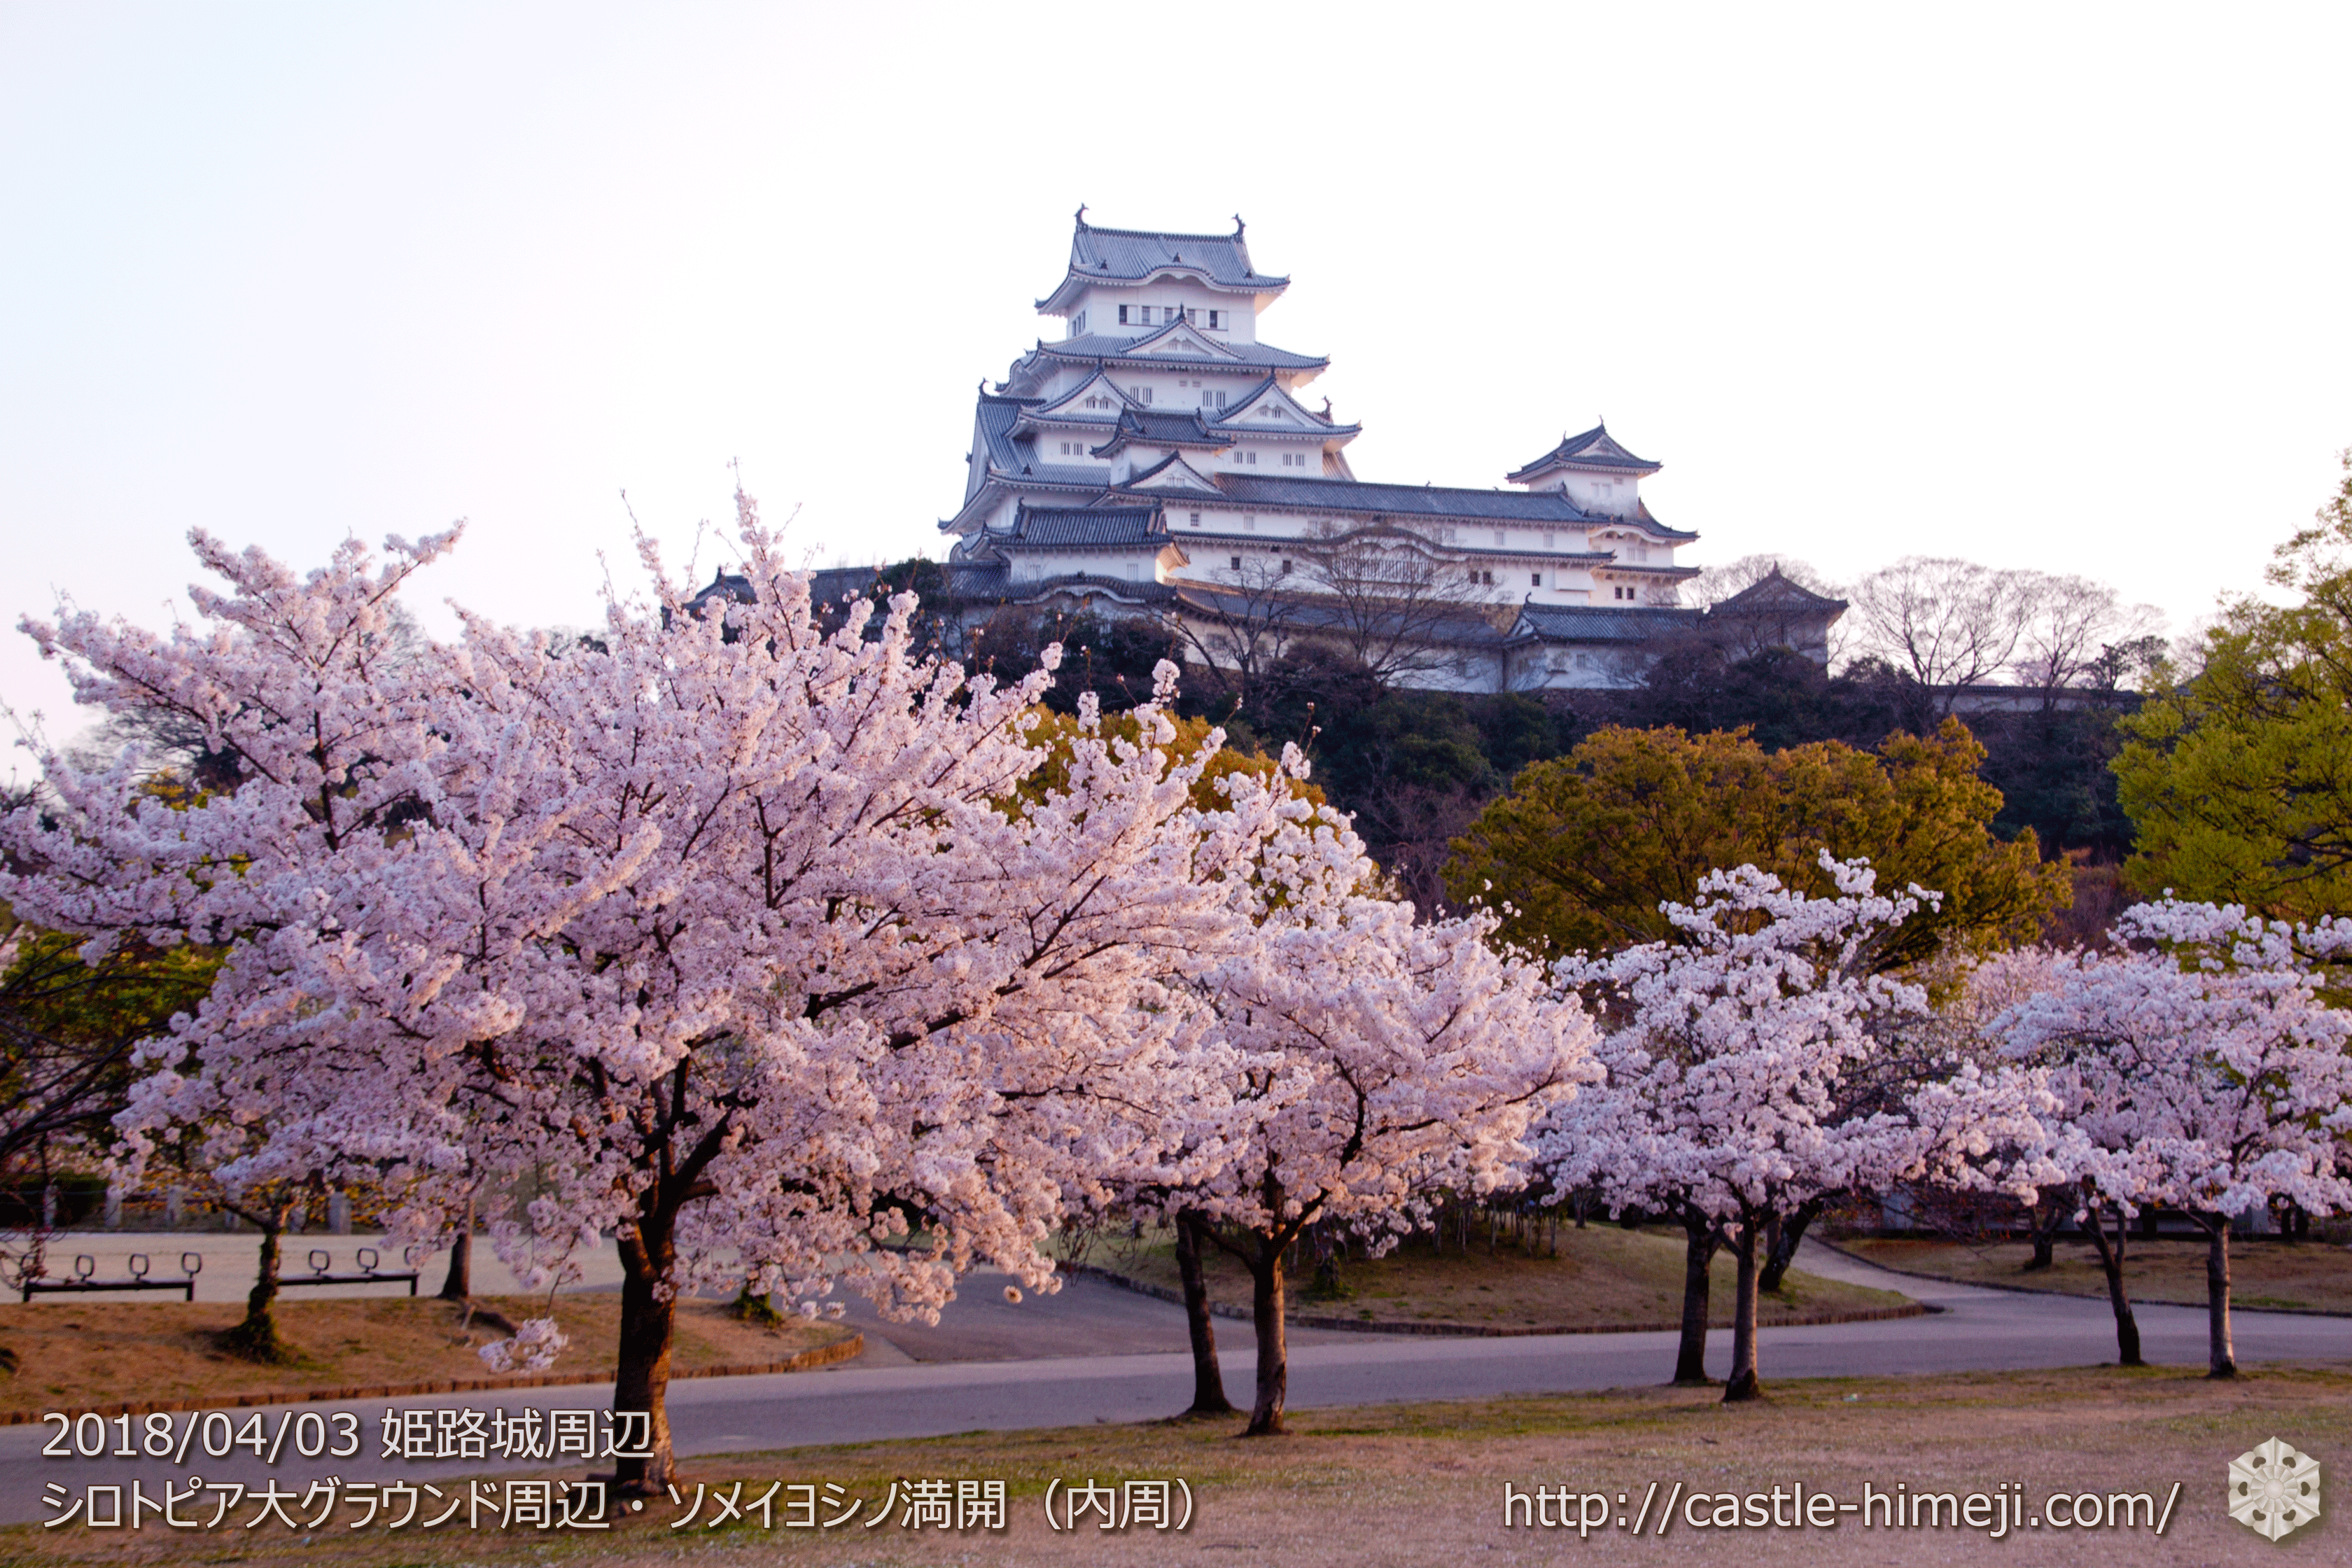 桜終了 遅咲徐々に見頃 18 4 6の姫路城の桜速報 落花状況と遅咲きの桜 姫路城観光おすすめ 見どころ案内